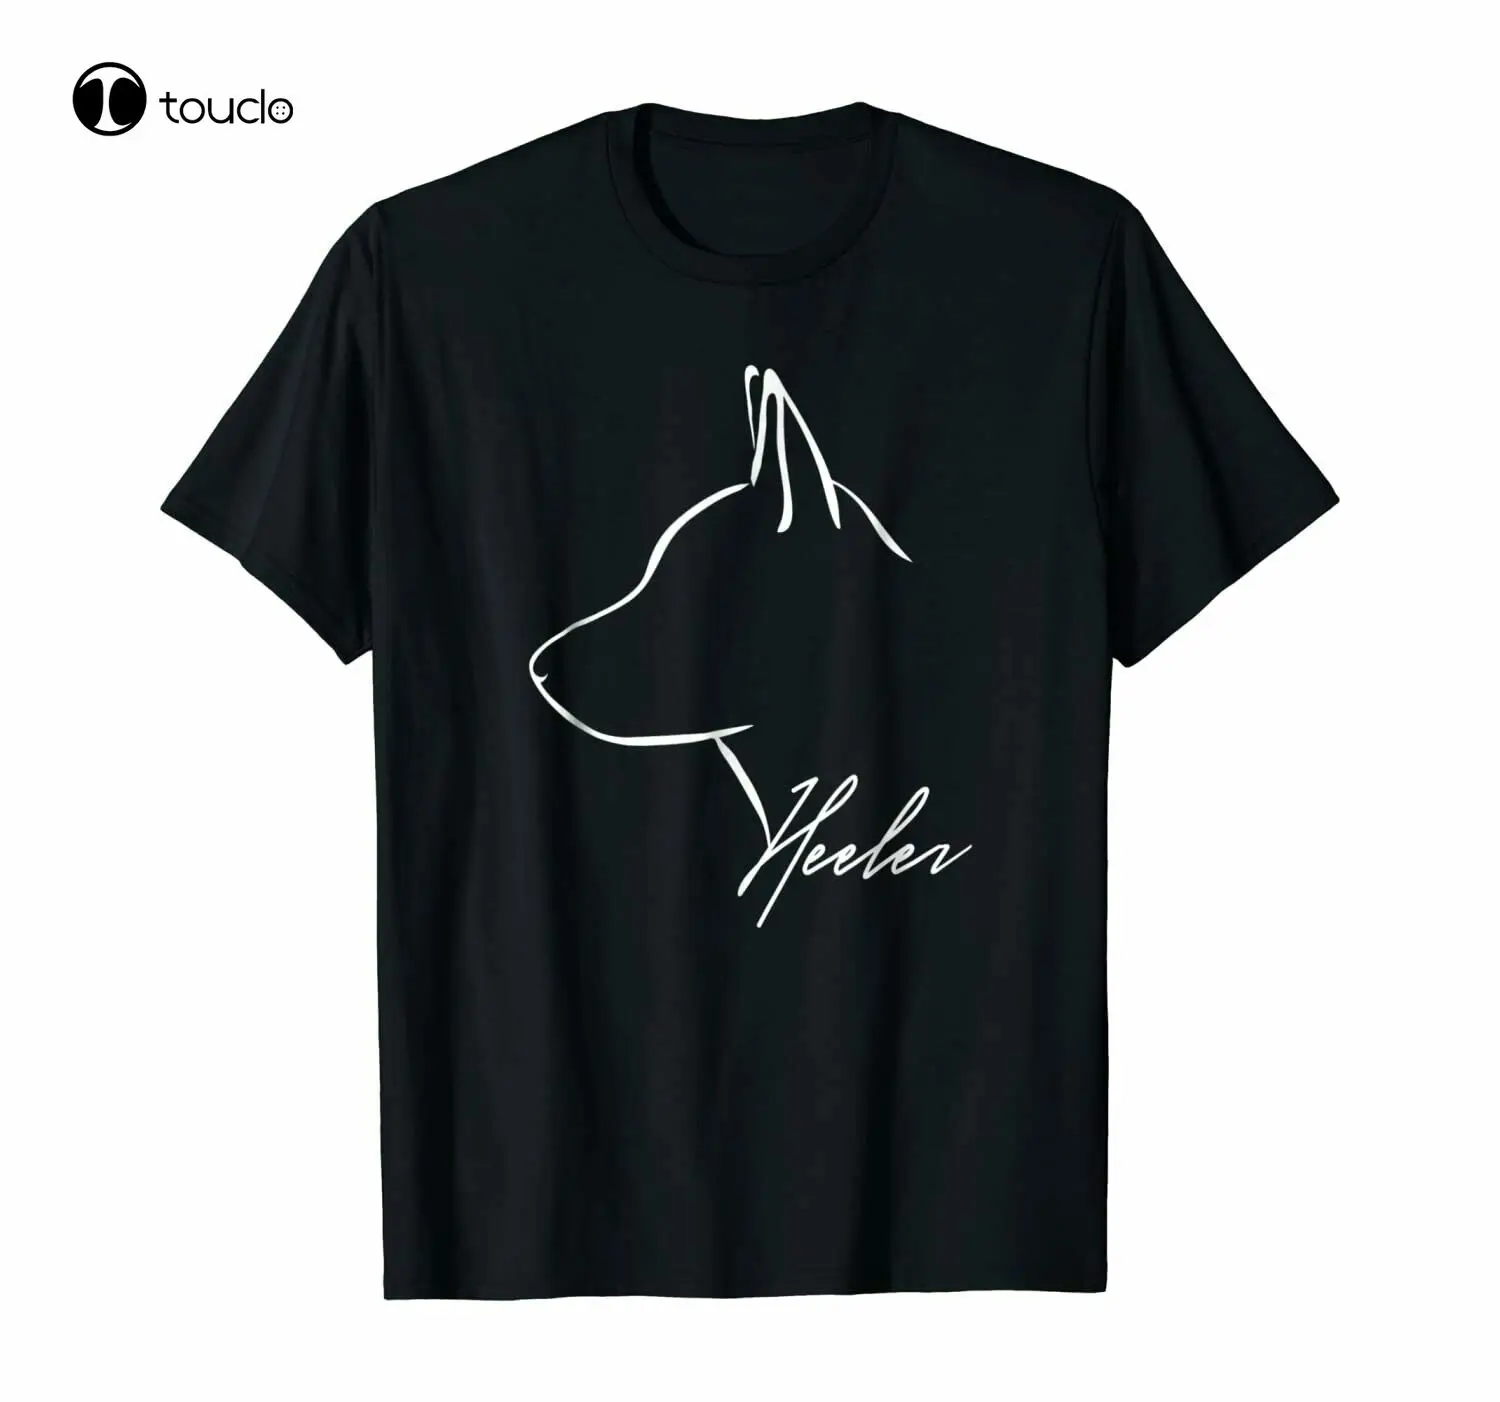 Blue Heeler Cattle Dog Profile Dog Lover T-Shirt Gift Tee S-3Xl Tee Shirt